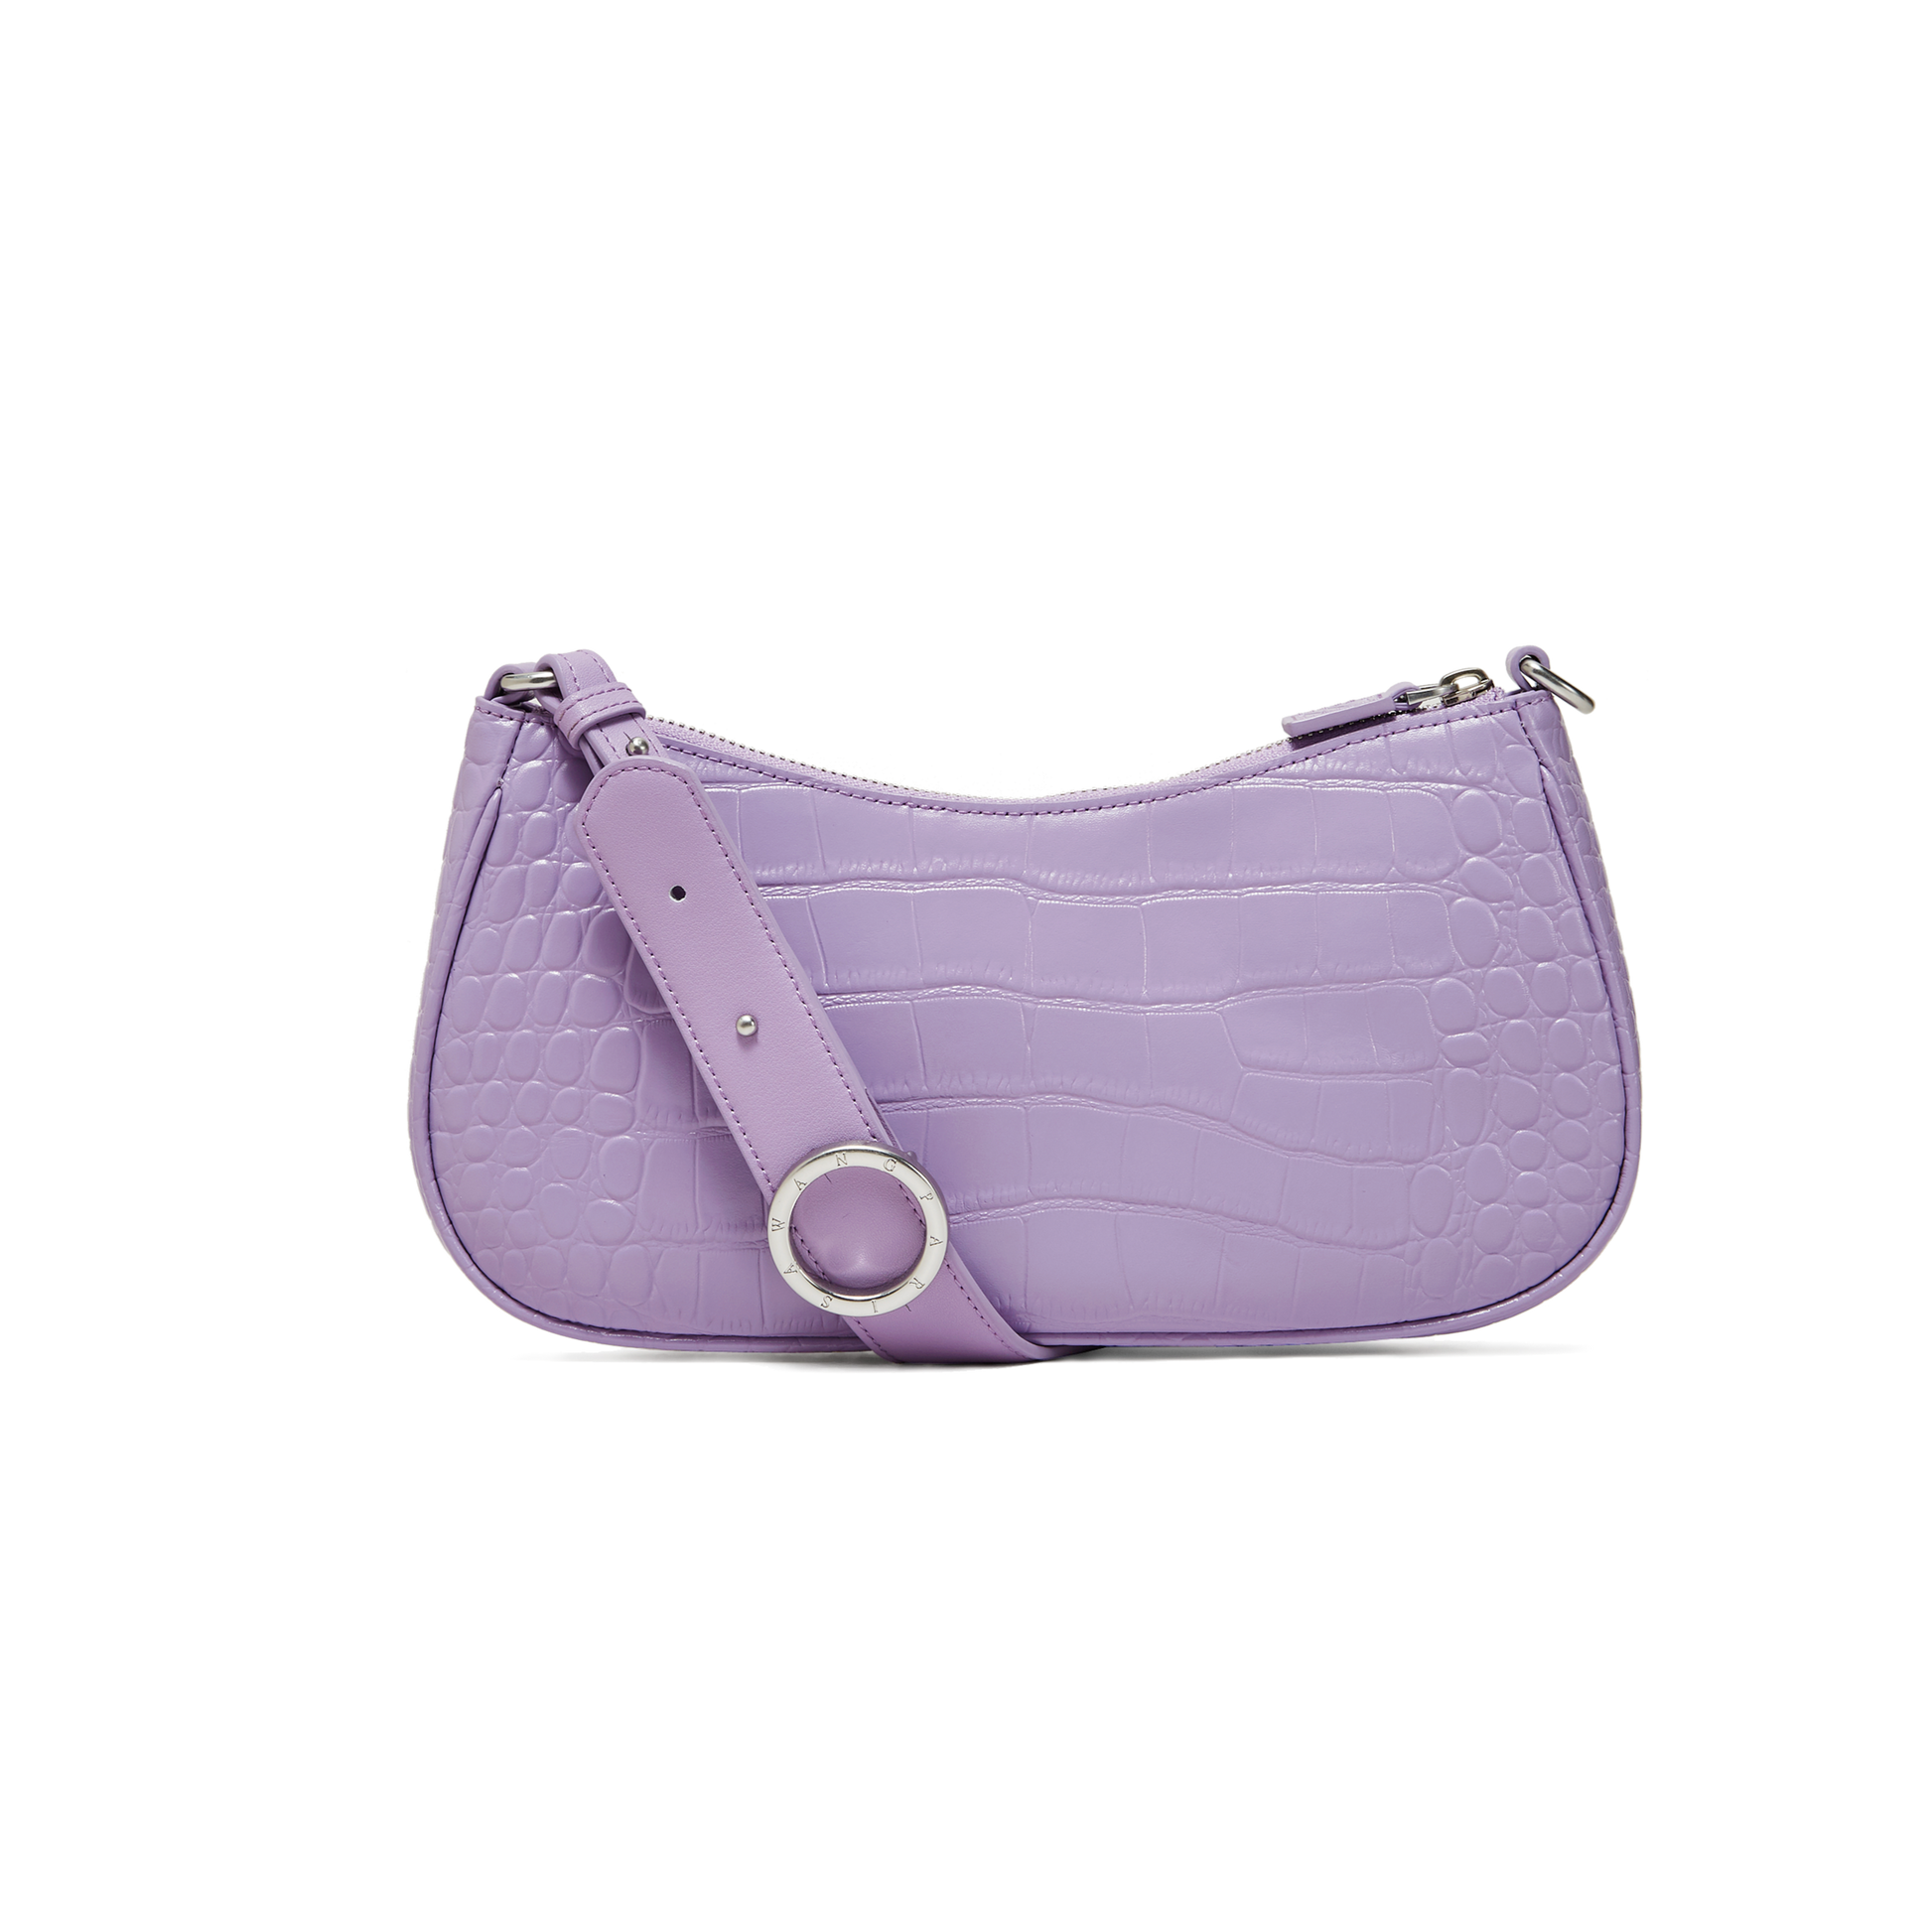 Charmed Baguette Bag in Lavender | Parisa Wang